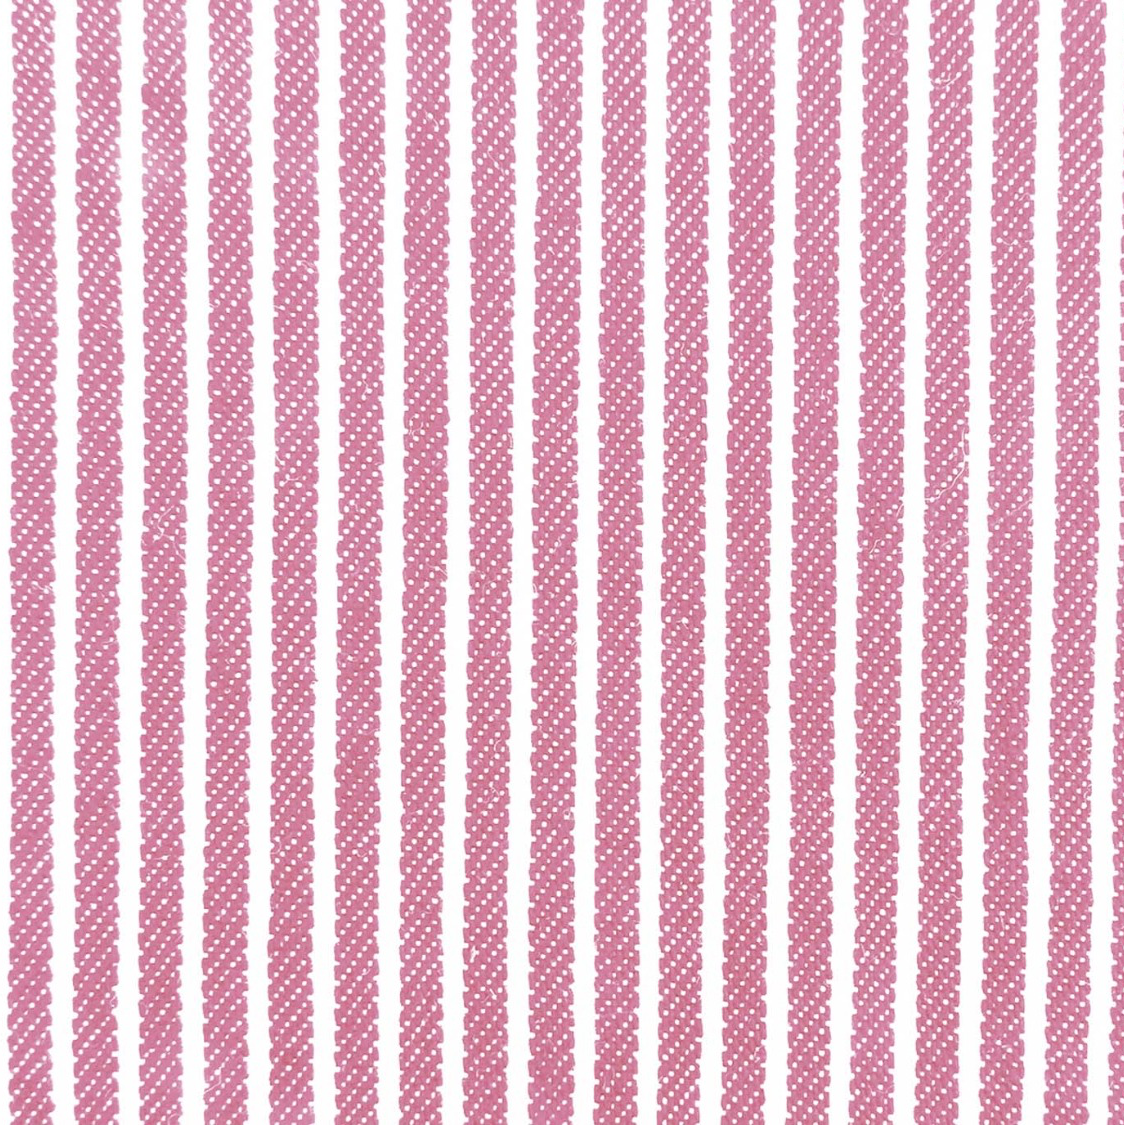 Jeansstoff rosa-weiß gestreift 